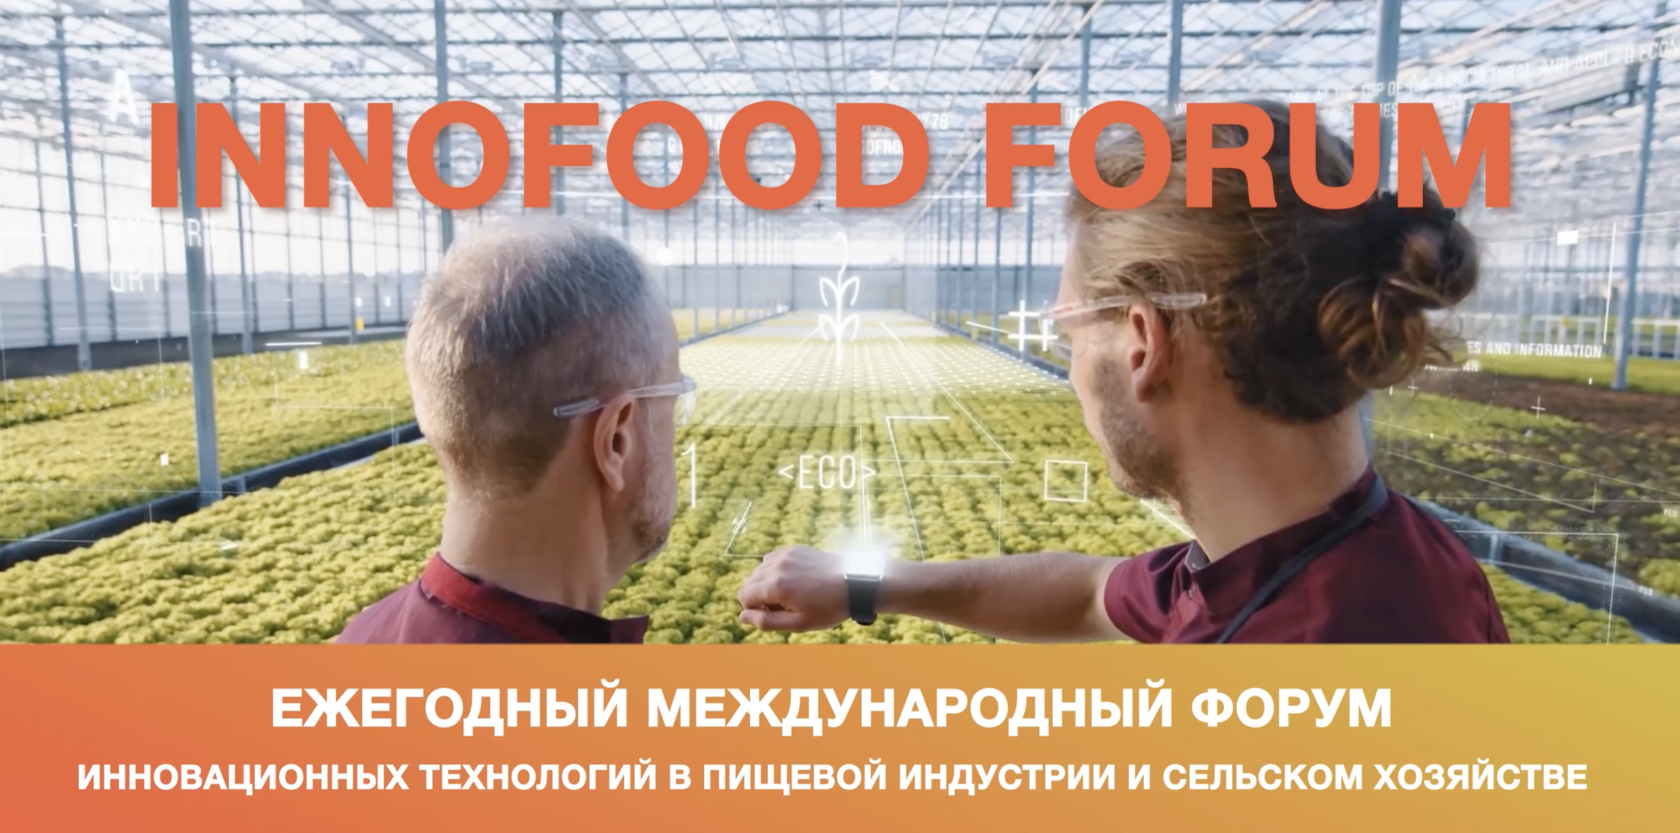 Ежегодный международный форум инновационных технологий в пищевой индустрии и сельском хозяйстве "INNOFOOD"в г. Сочи